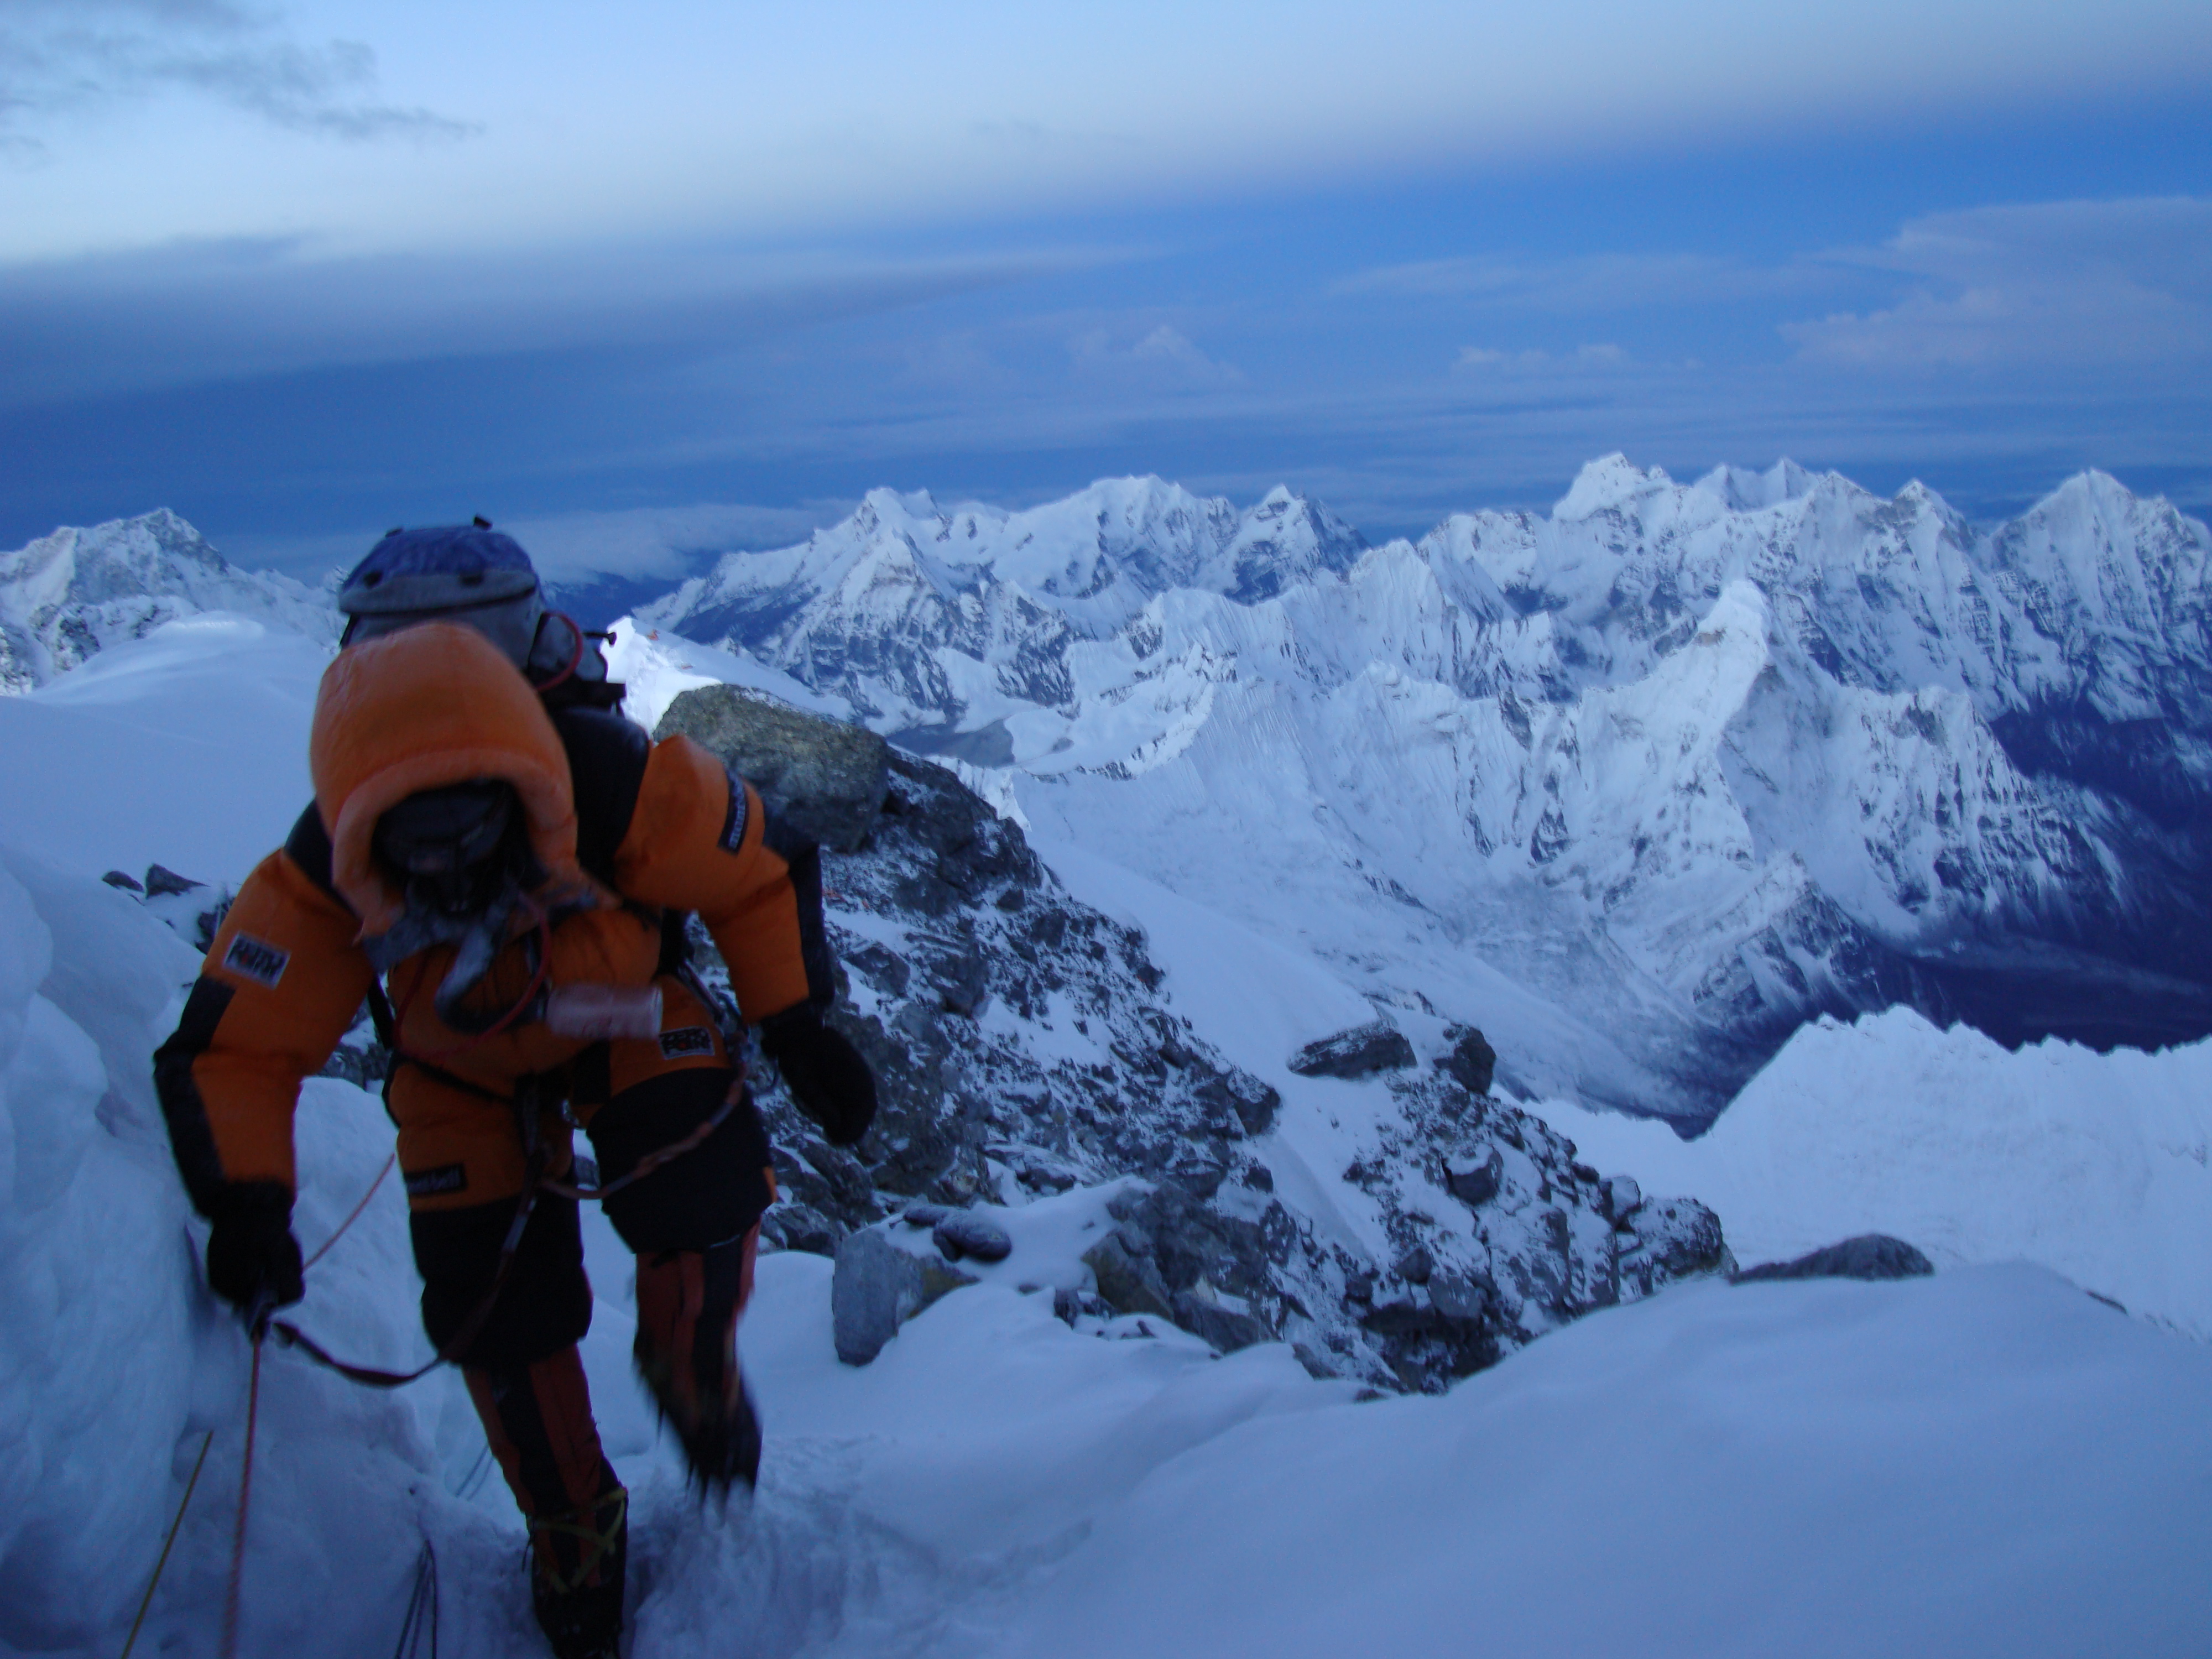 Southeast ridge on Mount Everest